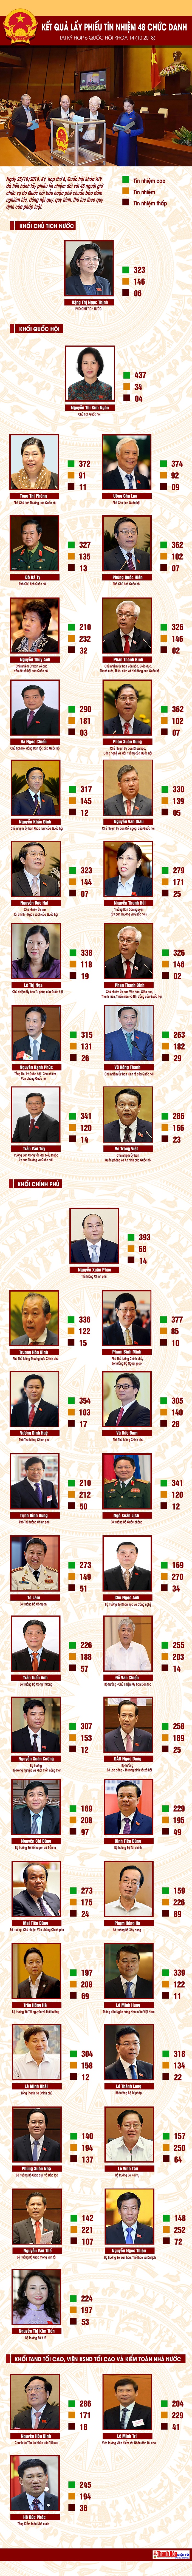 [Infographics] Kết quả lấy phiếu tín nhiệm các chức danh do Quốc hội bầu hoặc phê chuẩn